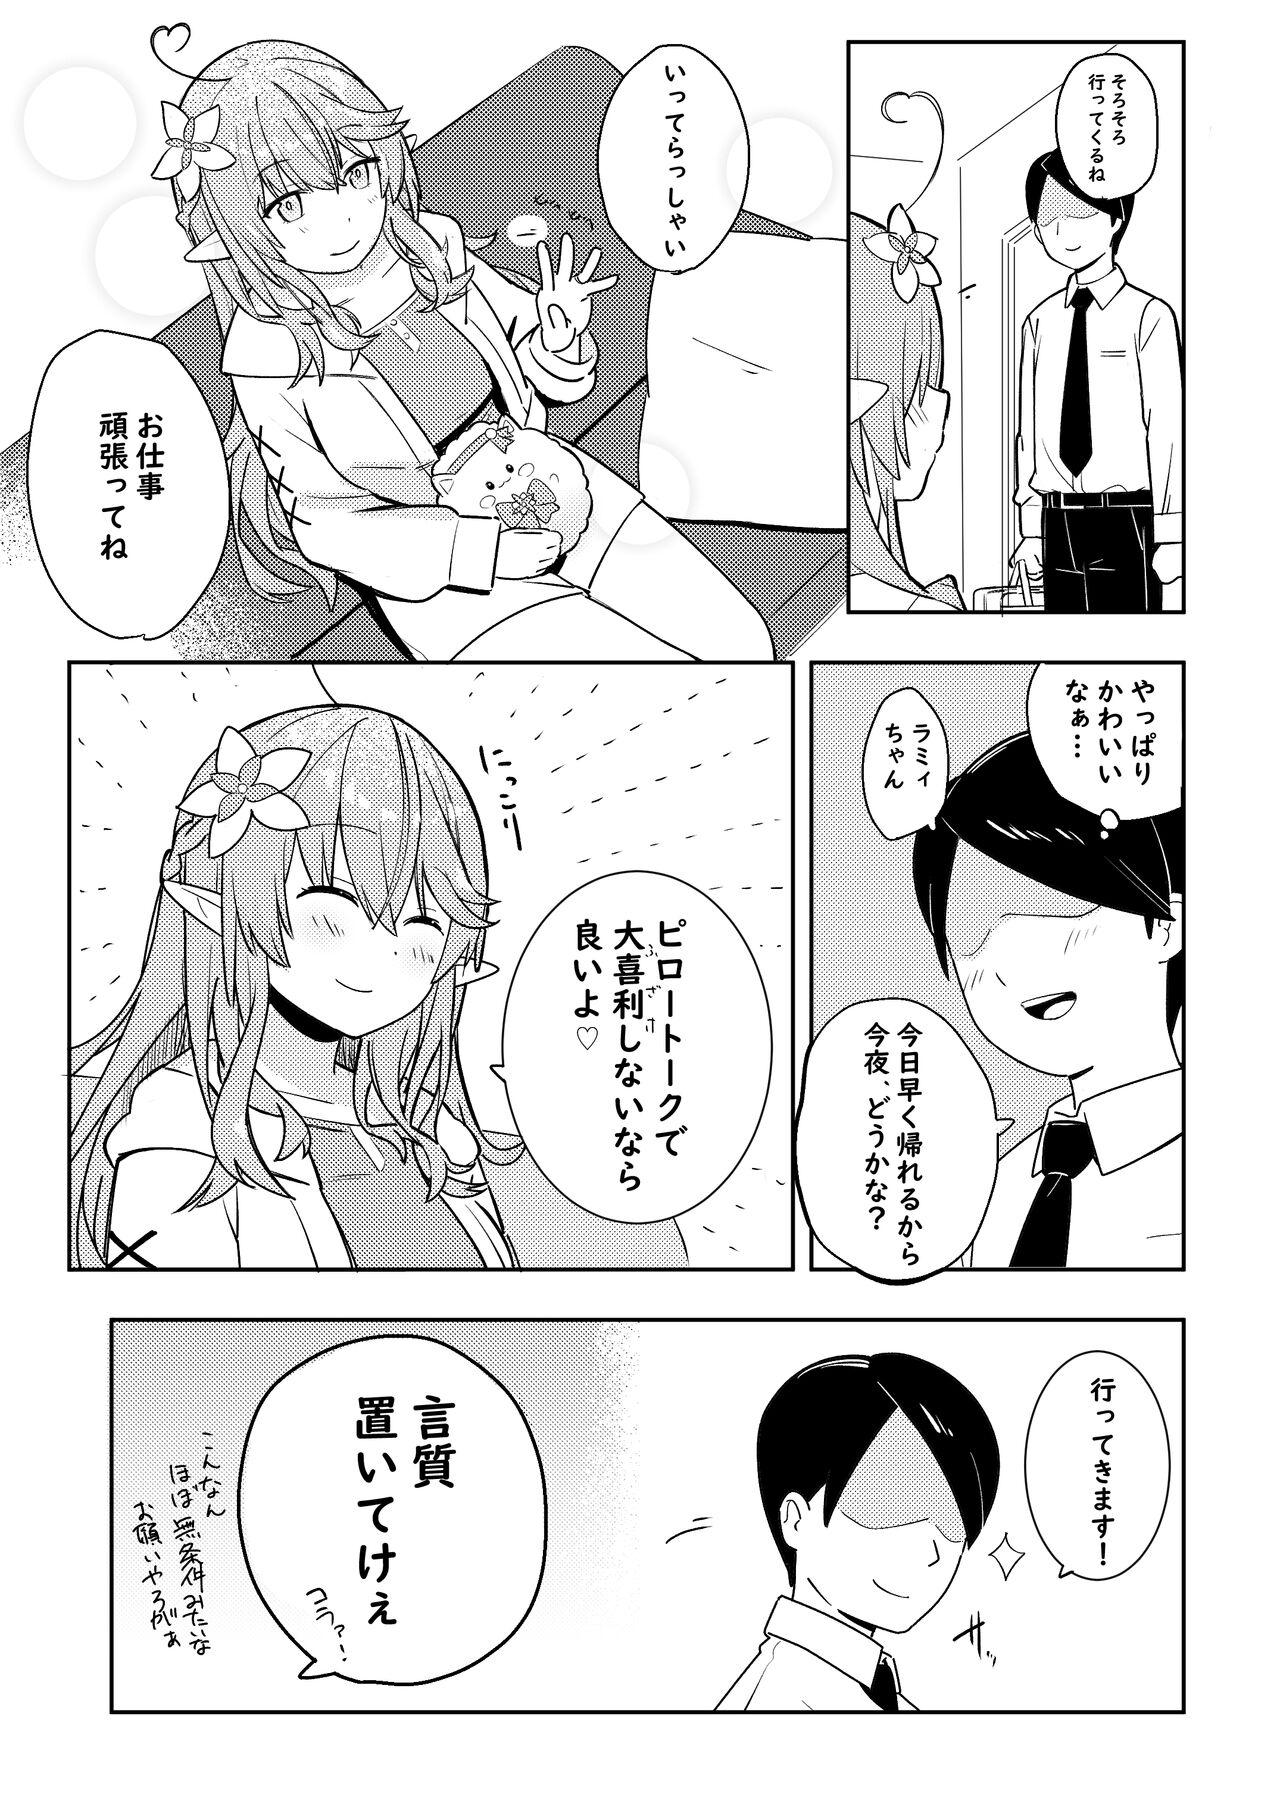 Chichona Twitter Short Manga - Hololive Bear - Page 4